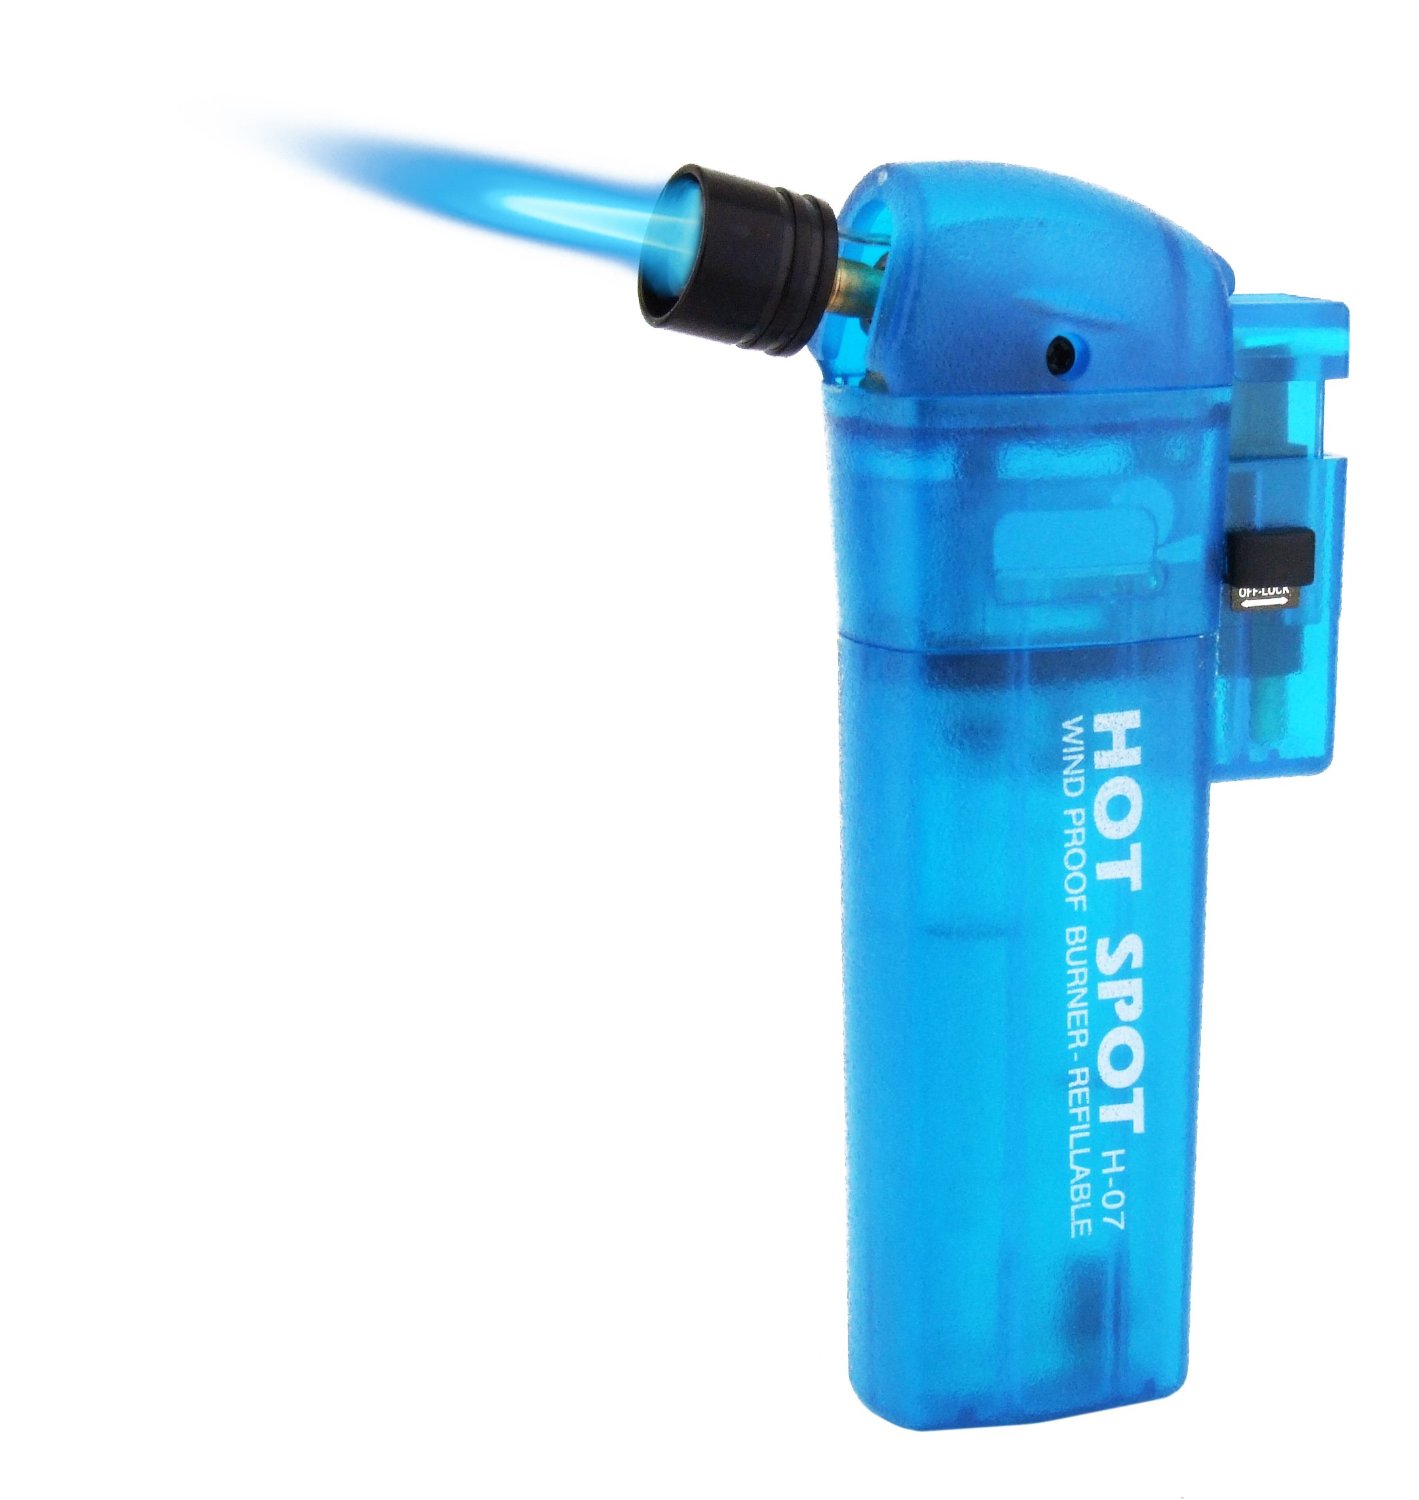 Convertable lighter blowtorch lighter gift idea